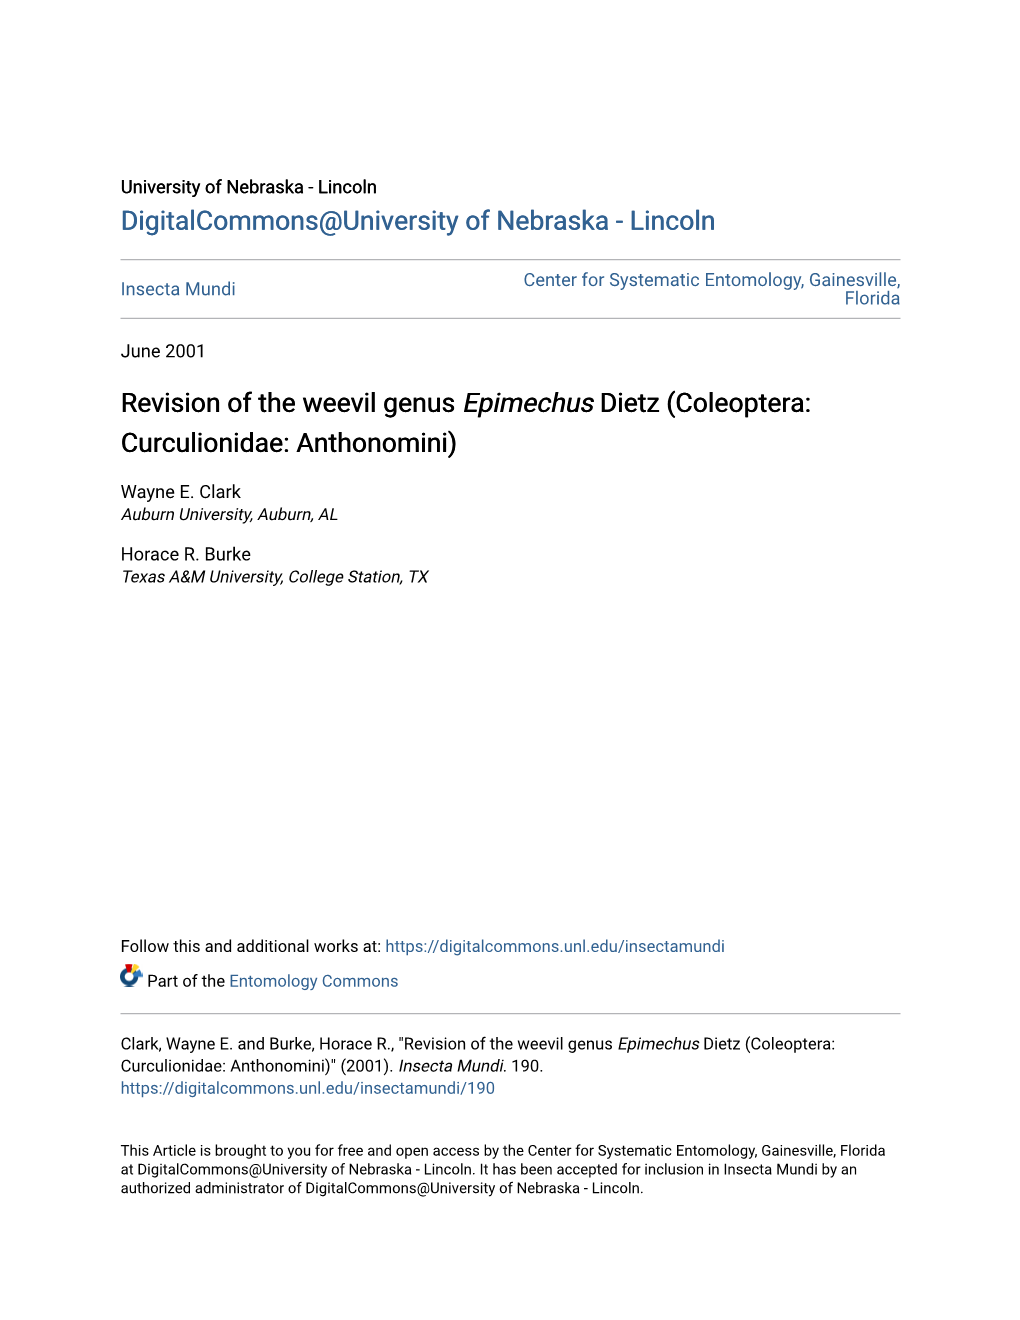 Revision of the Weevil Genus Epimechus Dietz (Coleoptera: Curculionidae: Anthonomini)